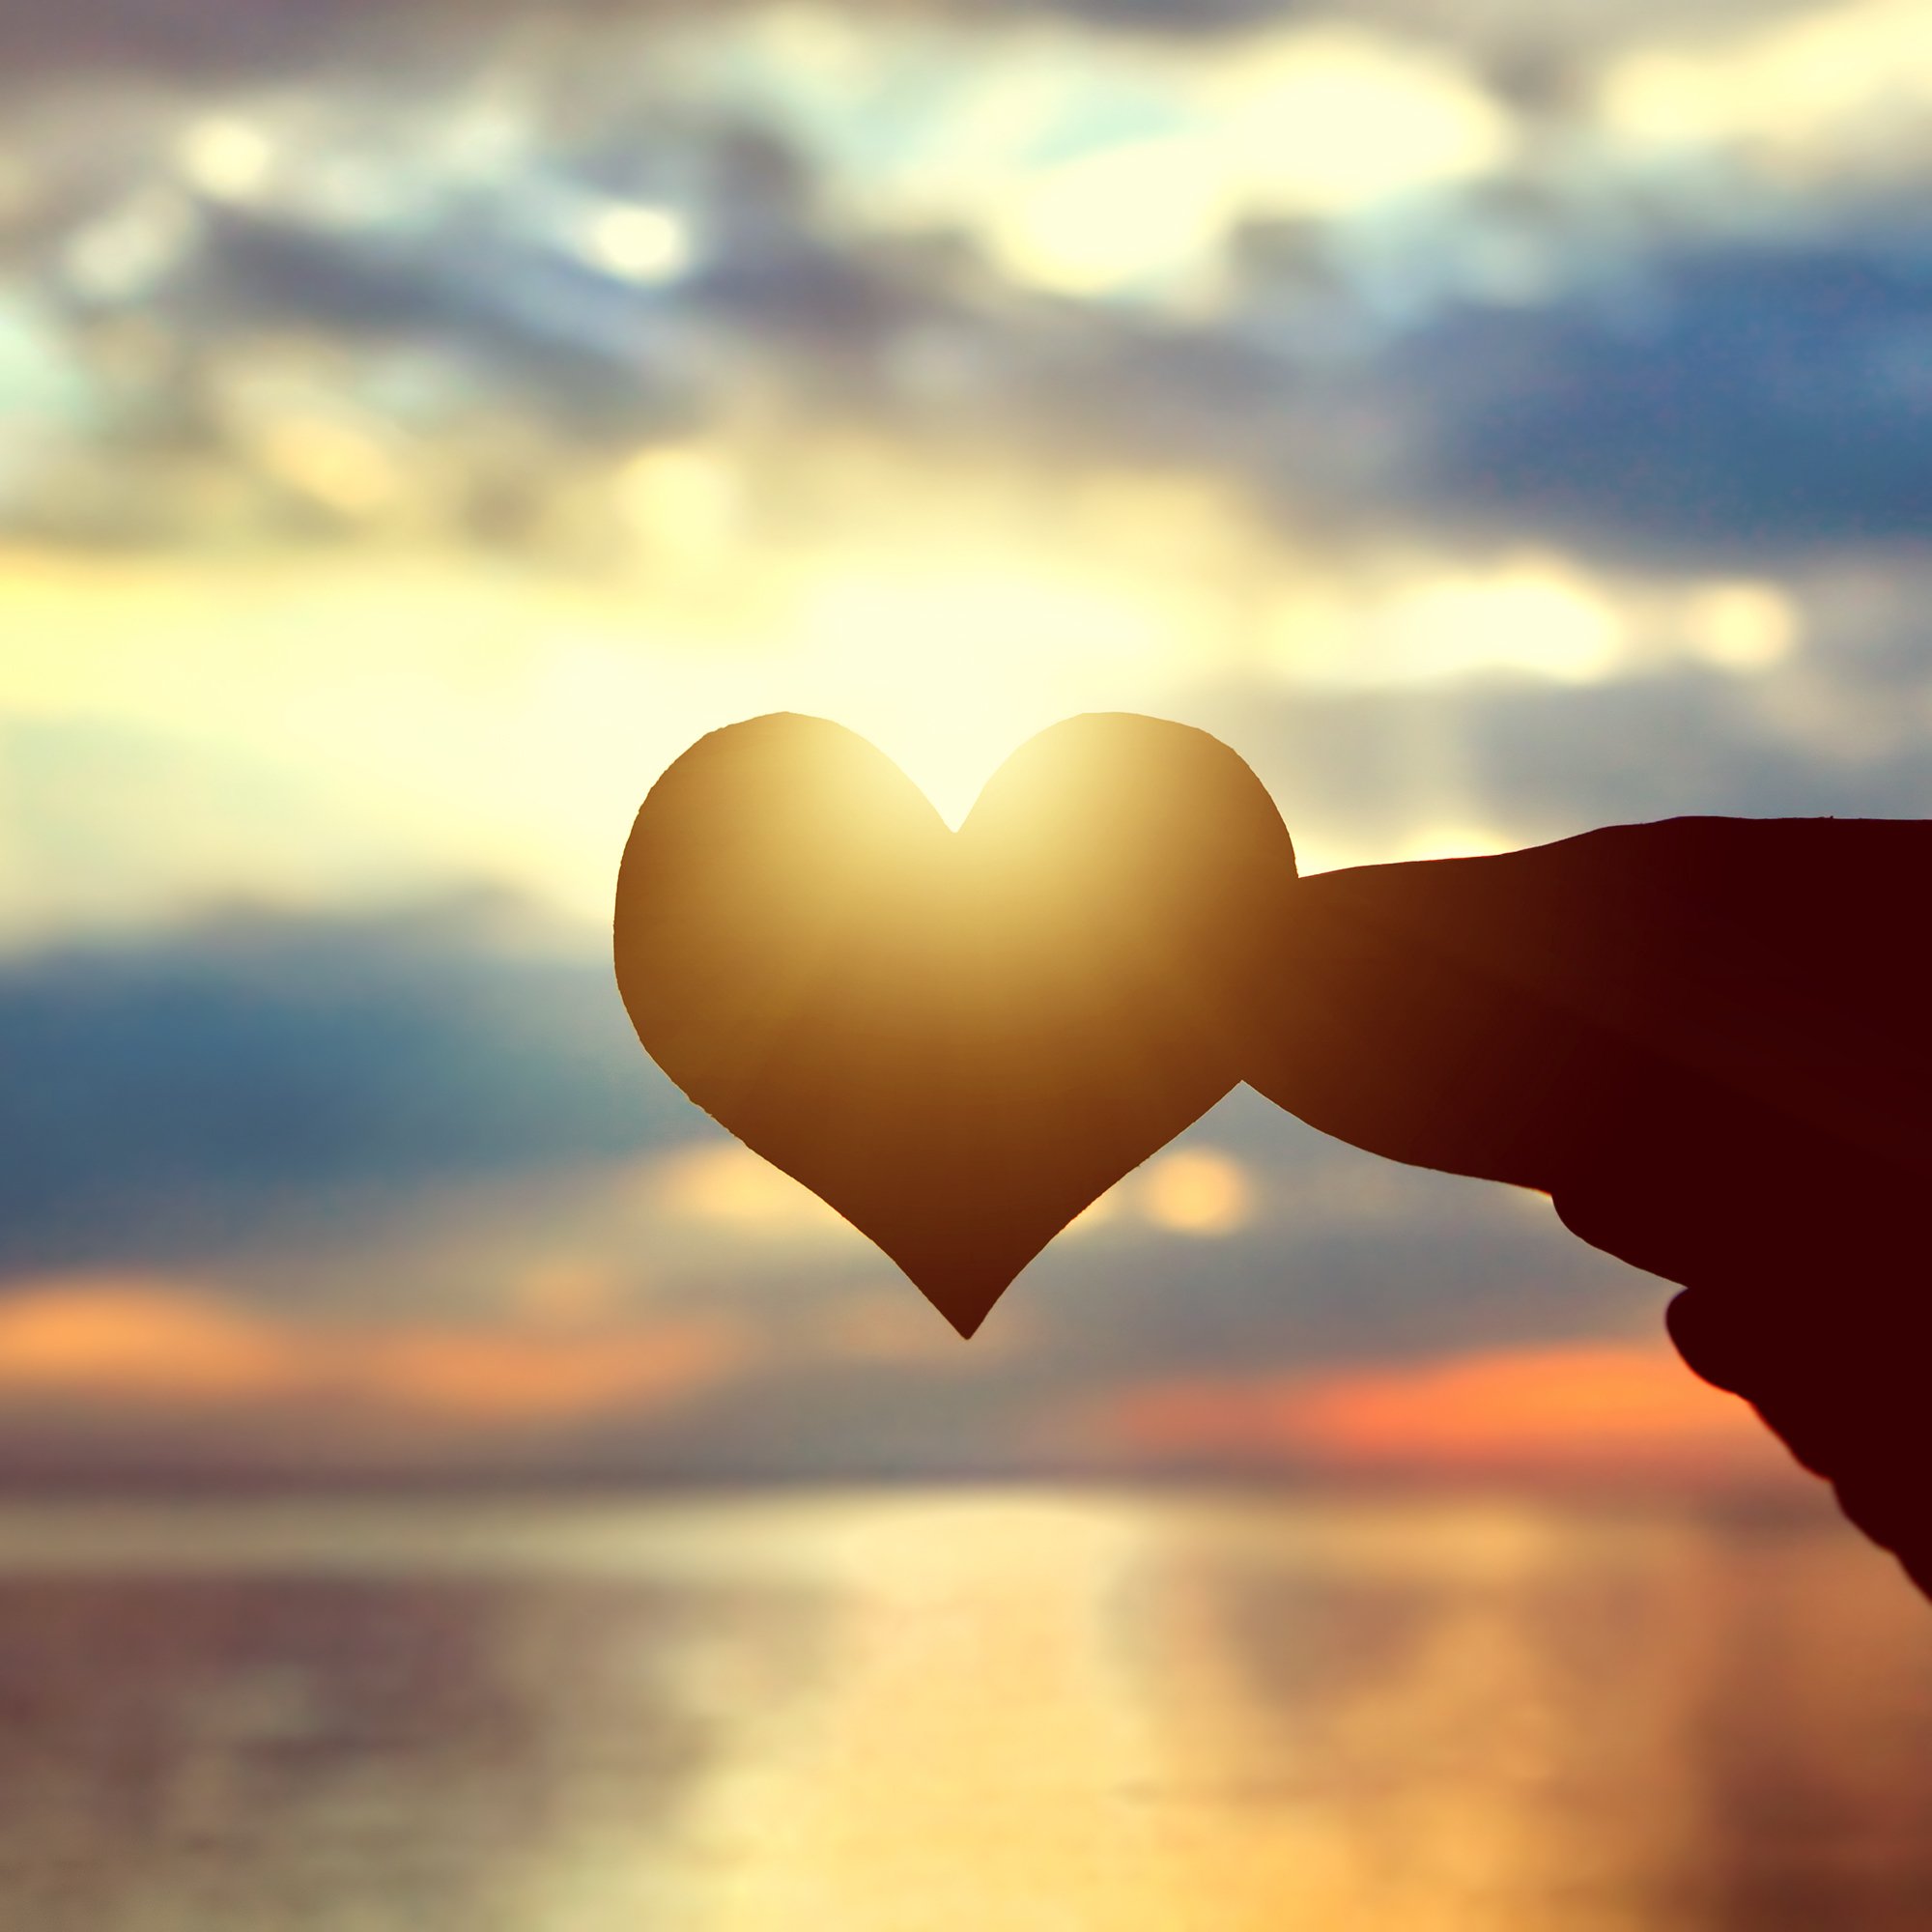 Silueta de corazón a contraluz.| Fuente: Shutterstock 